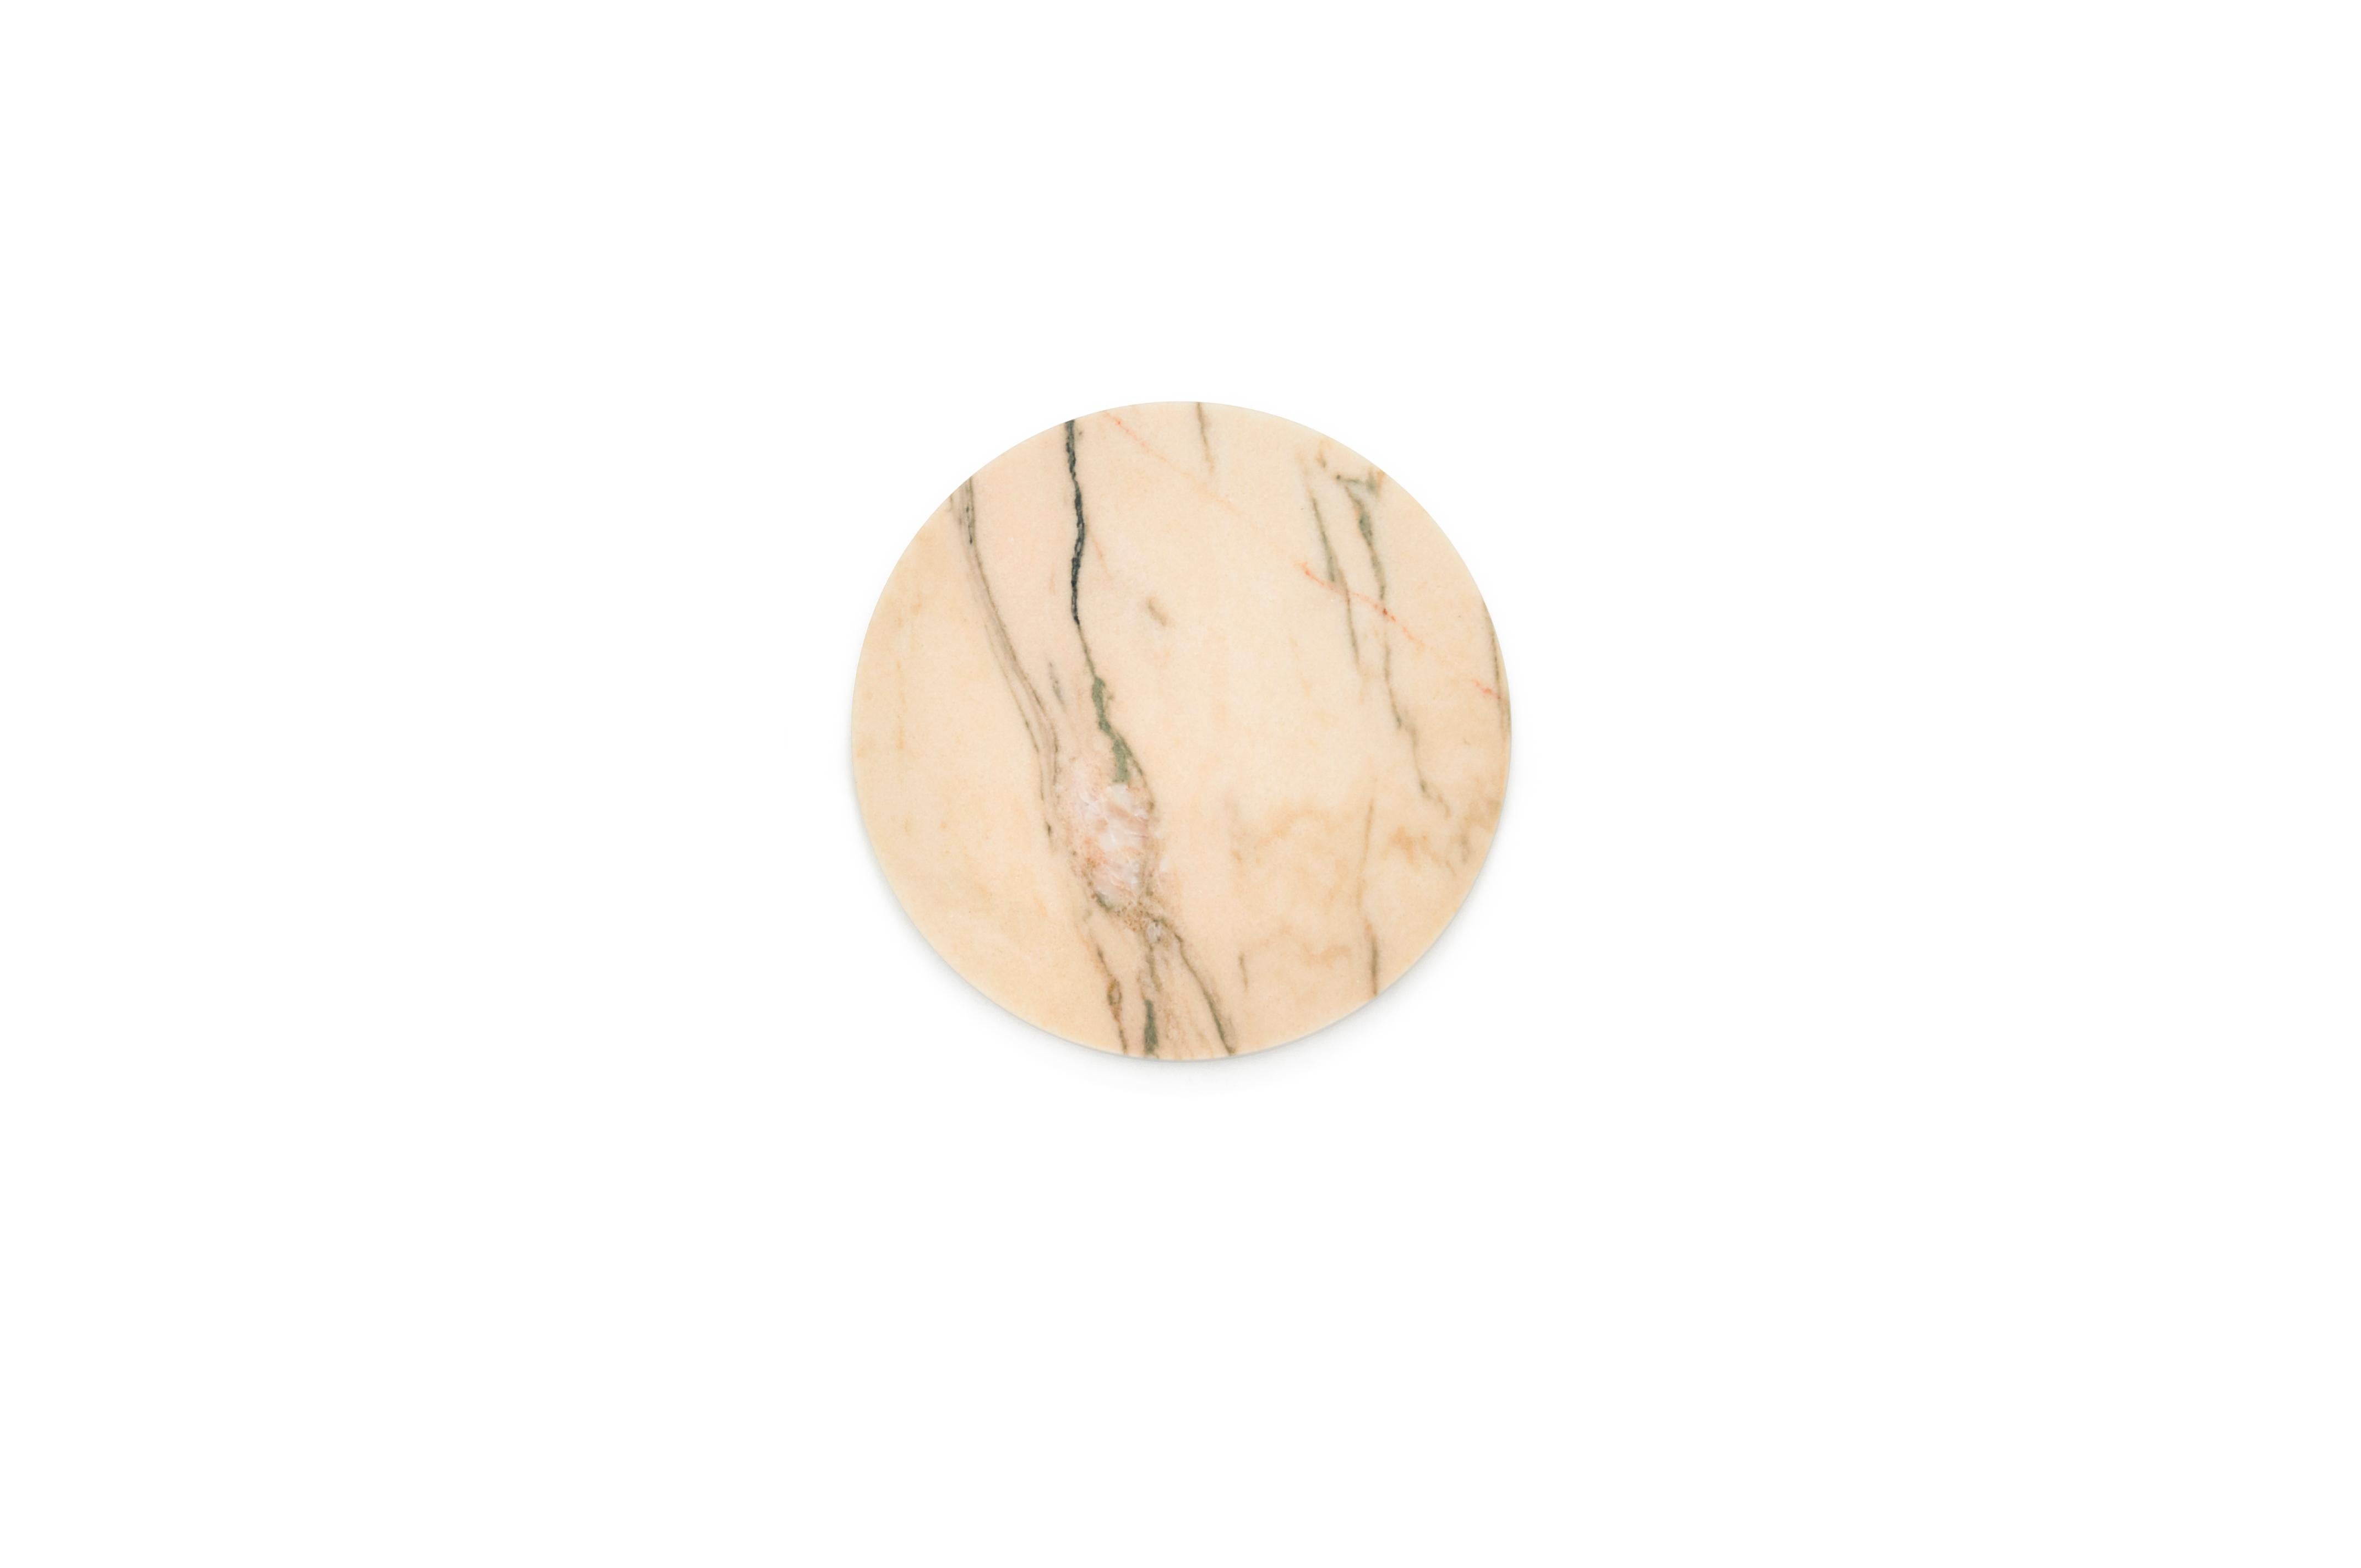 Plateau à fromage arrondi en marbre rose du Portugal. Chaque pièce est en quelque sorte unique (chaque bloc de marbre est différent par ses veines et ses nuances) et fabriquée à la main par des artisans italiens spécialisés depuis des générations